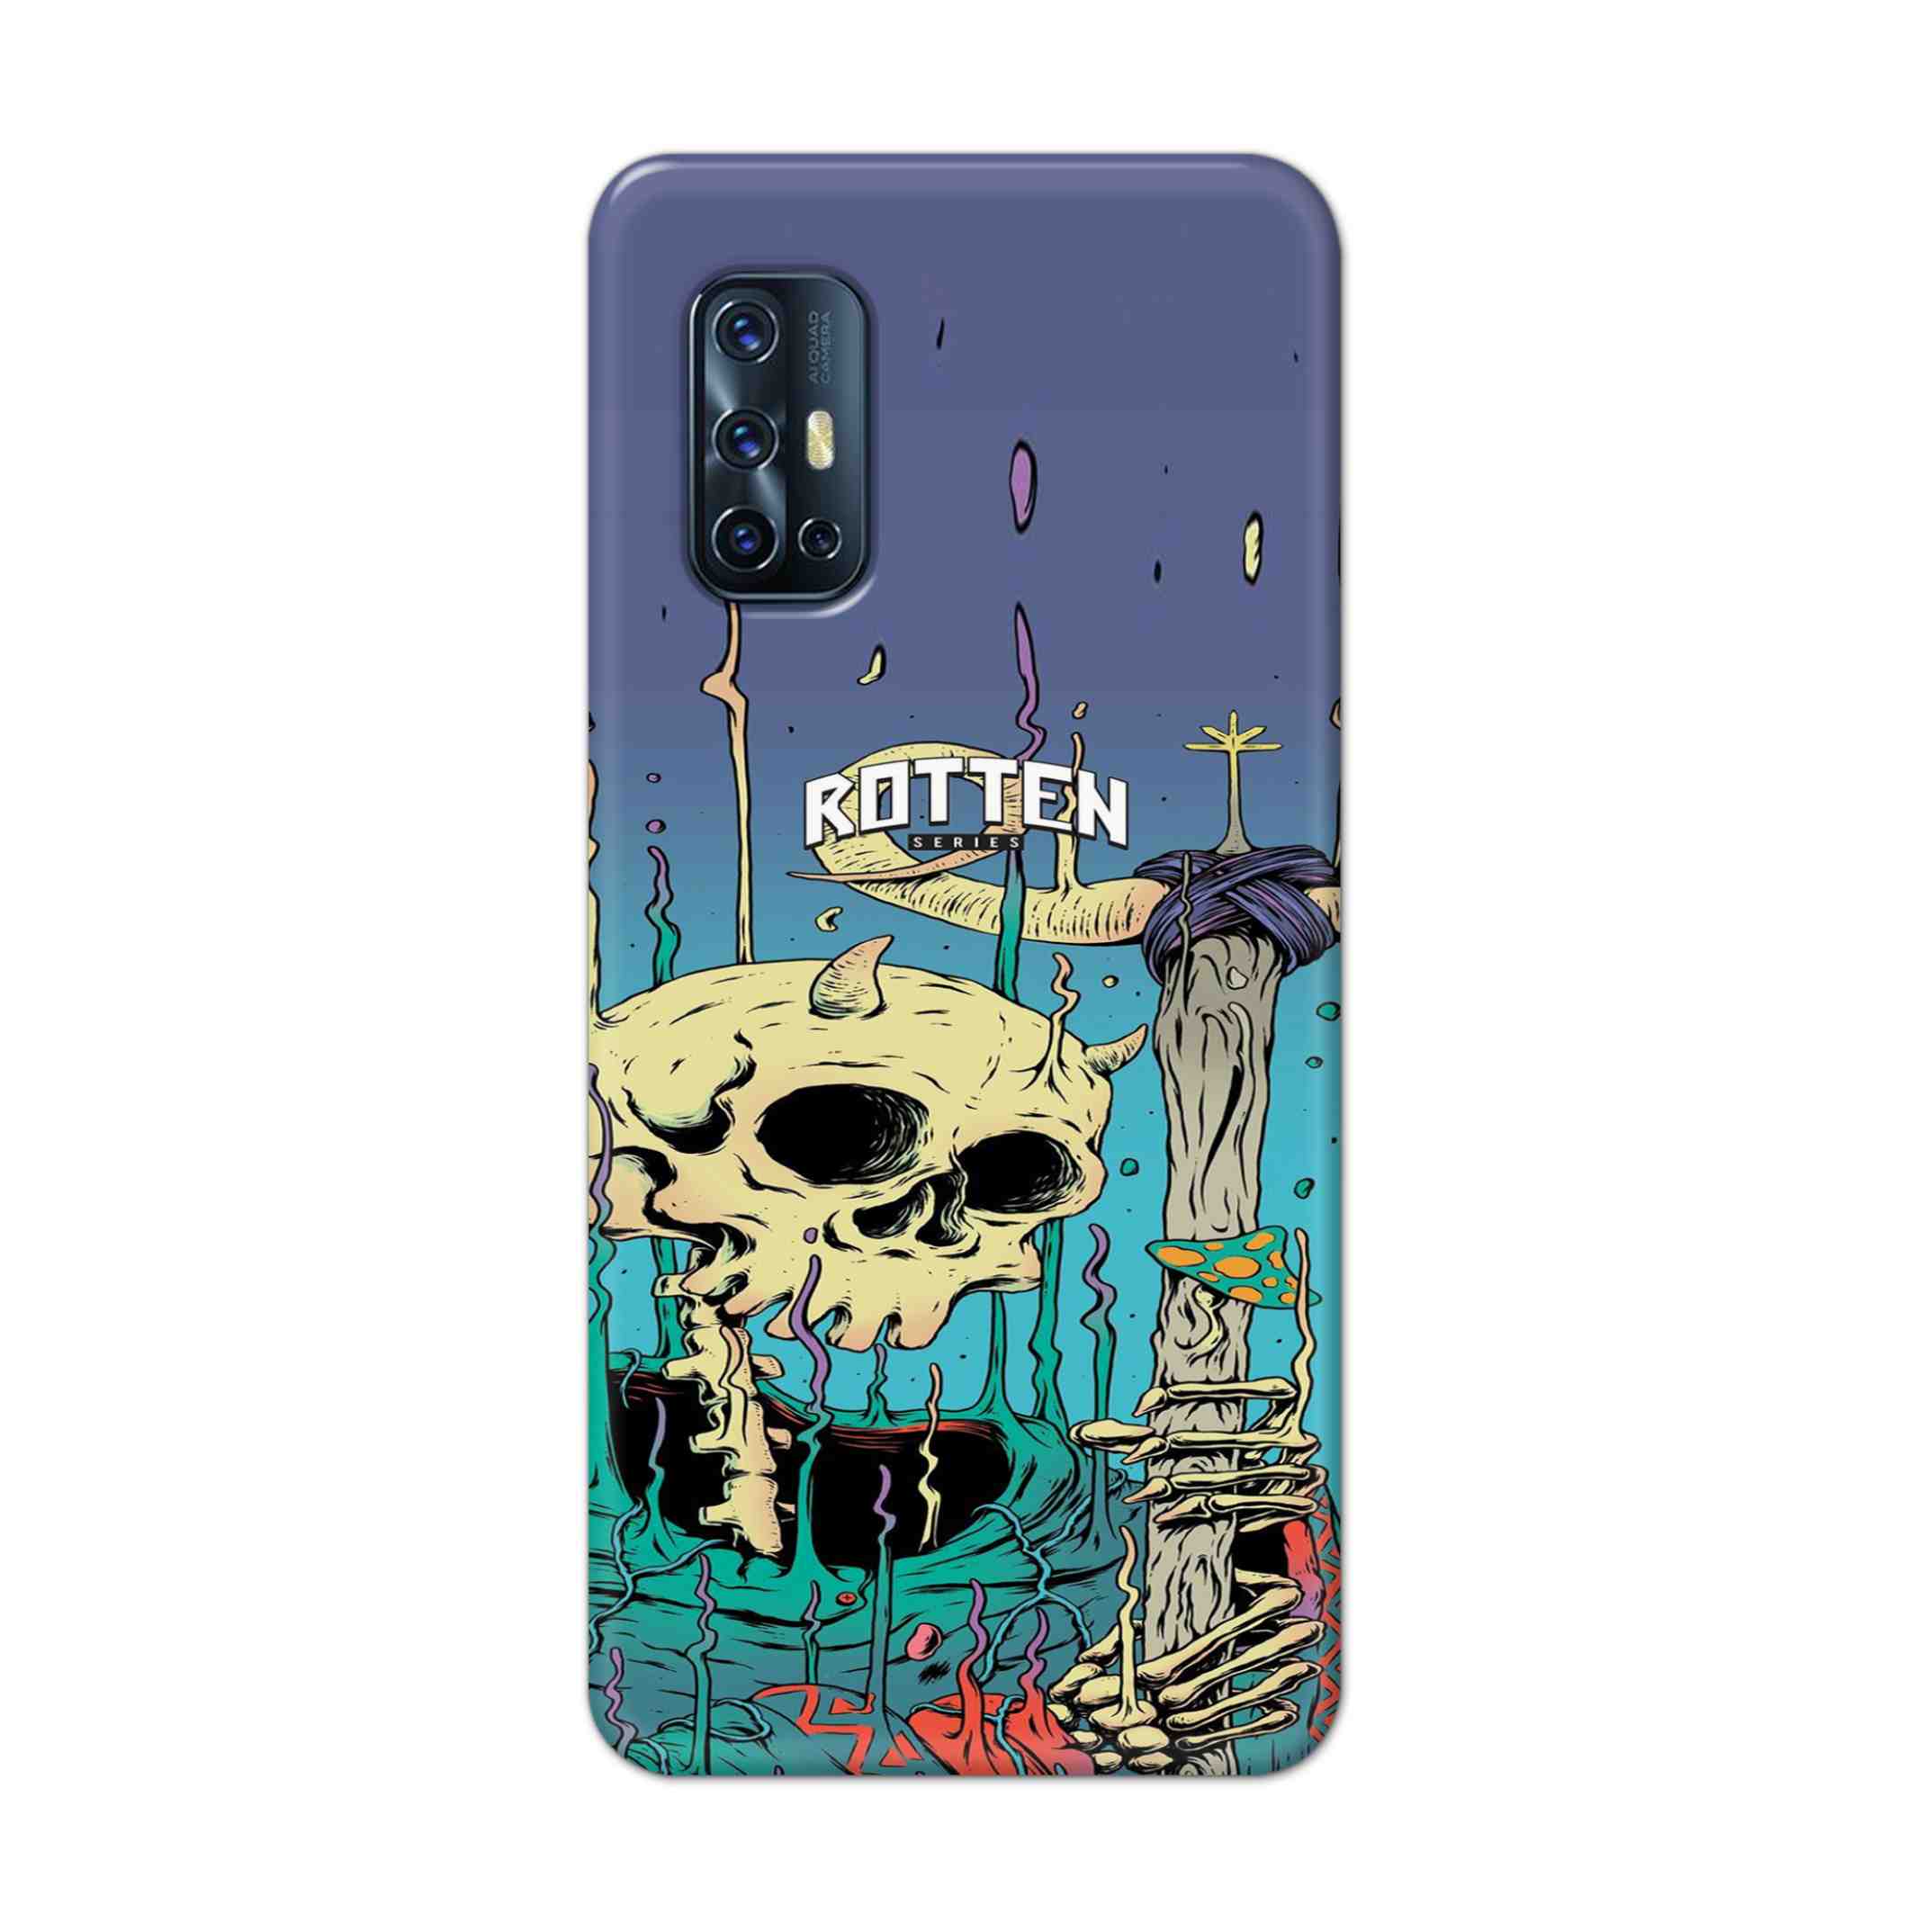 Buy Skull Hard Back Mobile Phone Case Cover For Vivo V17 Online